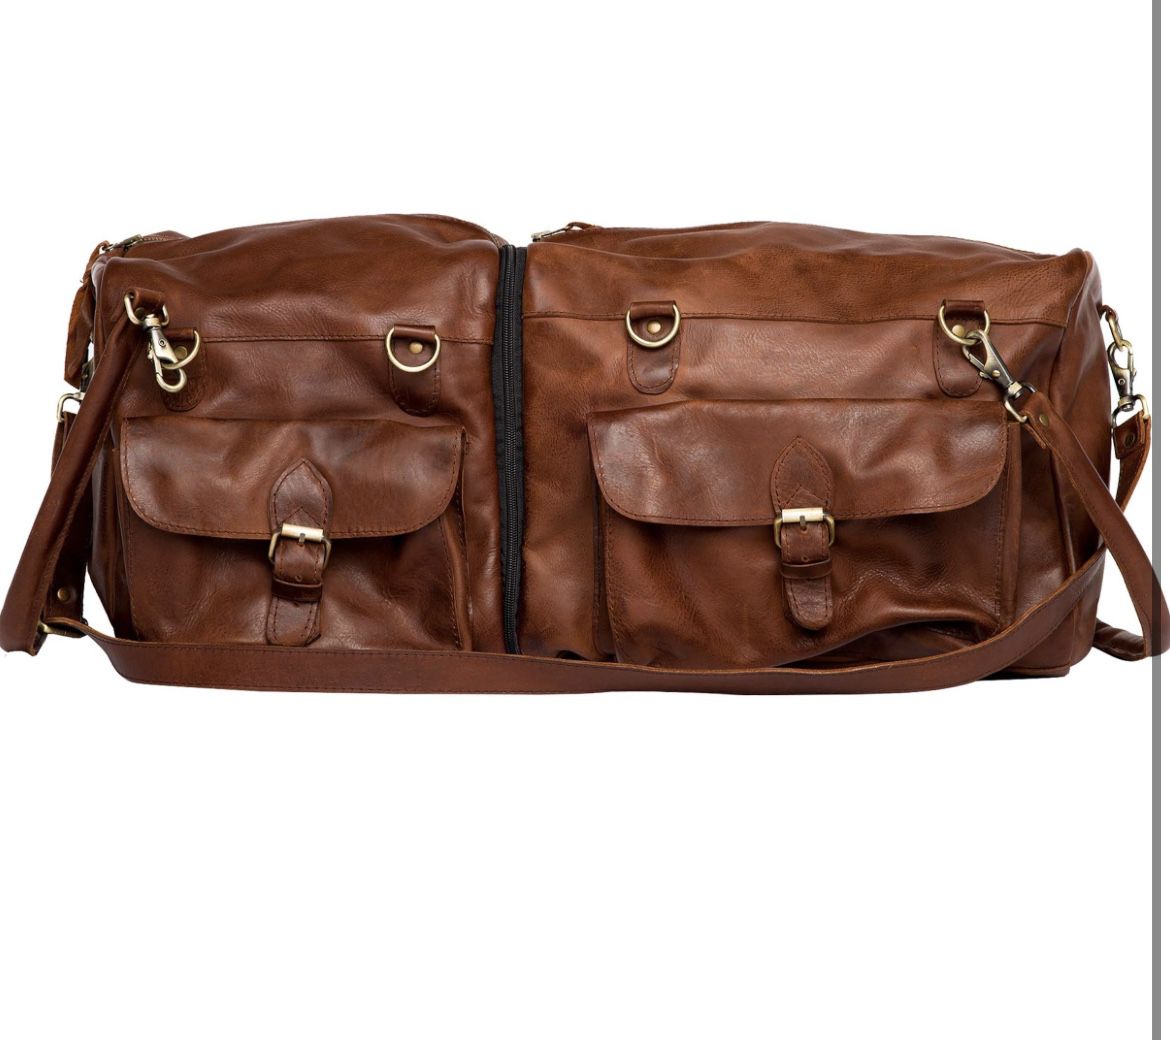 Leather Duffle Bags for Men | Weekender Duffel Bag Women | Weekender Bag Mens 